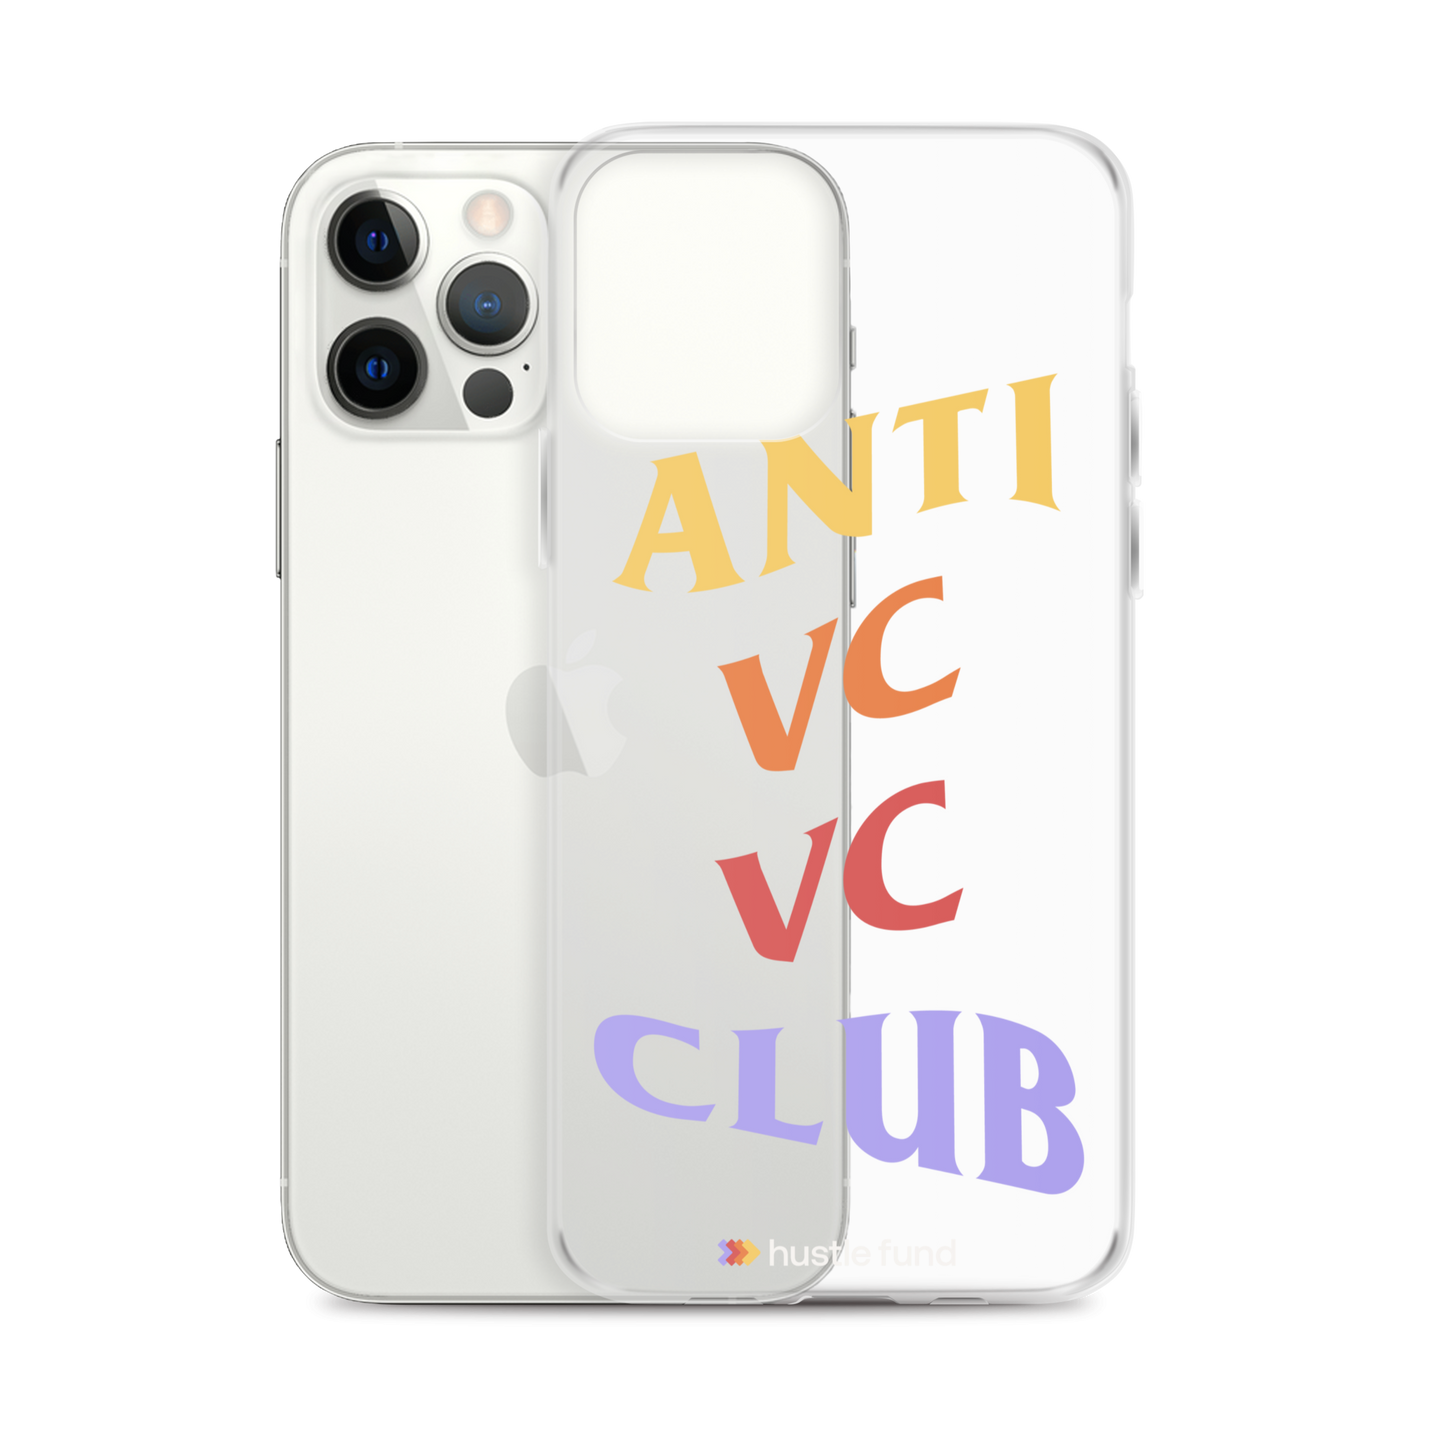 Anti VC VC Club iPhone Case